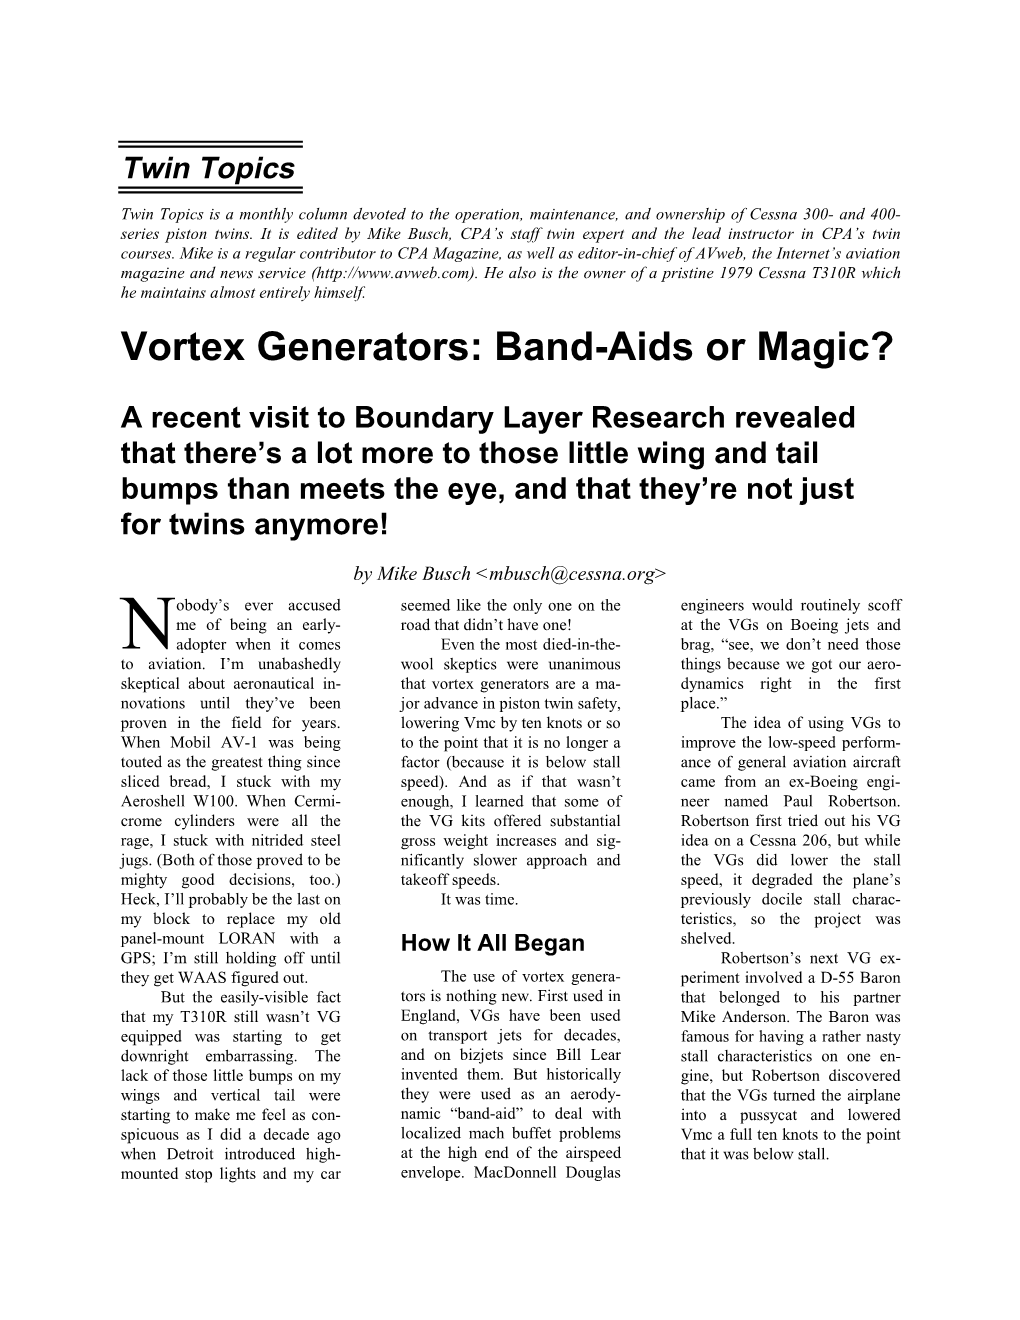 Vortex Generators: Band-Aids Or Magic?